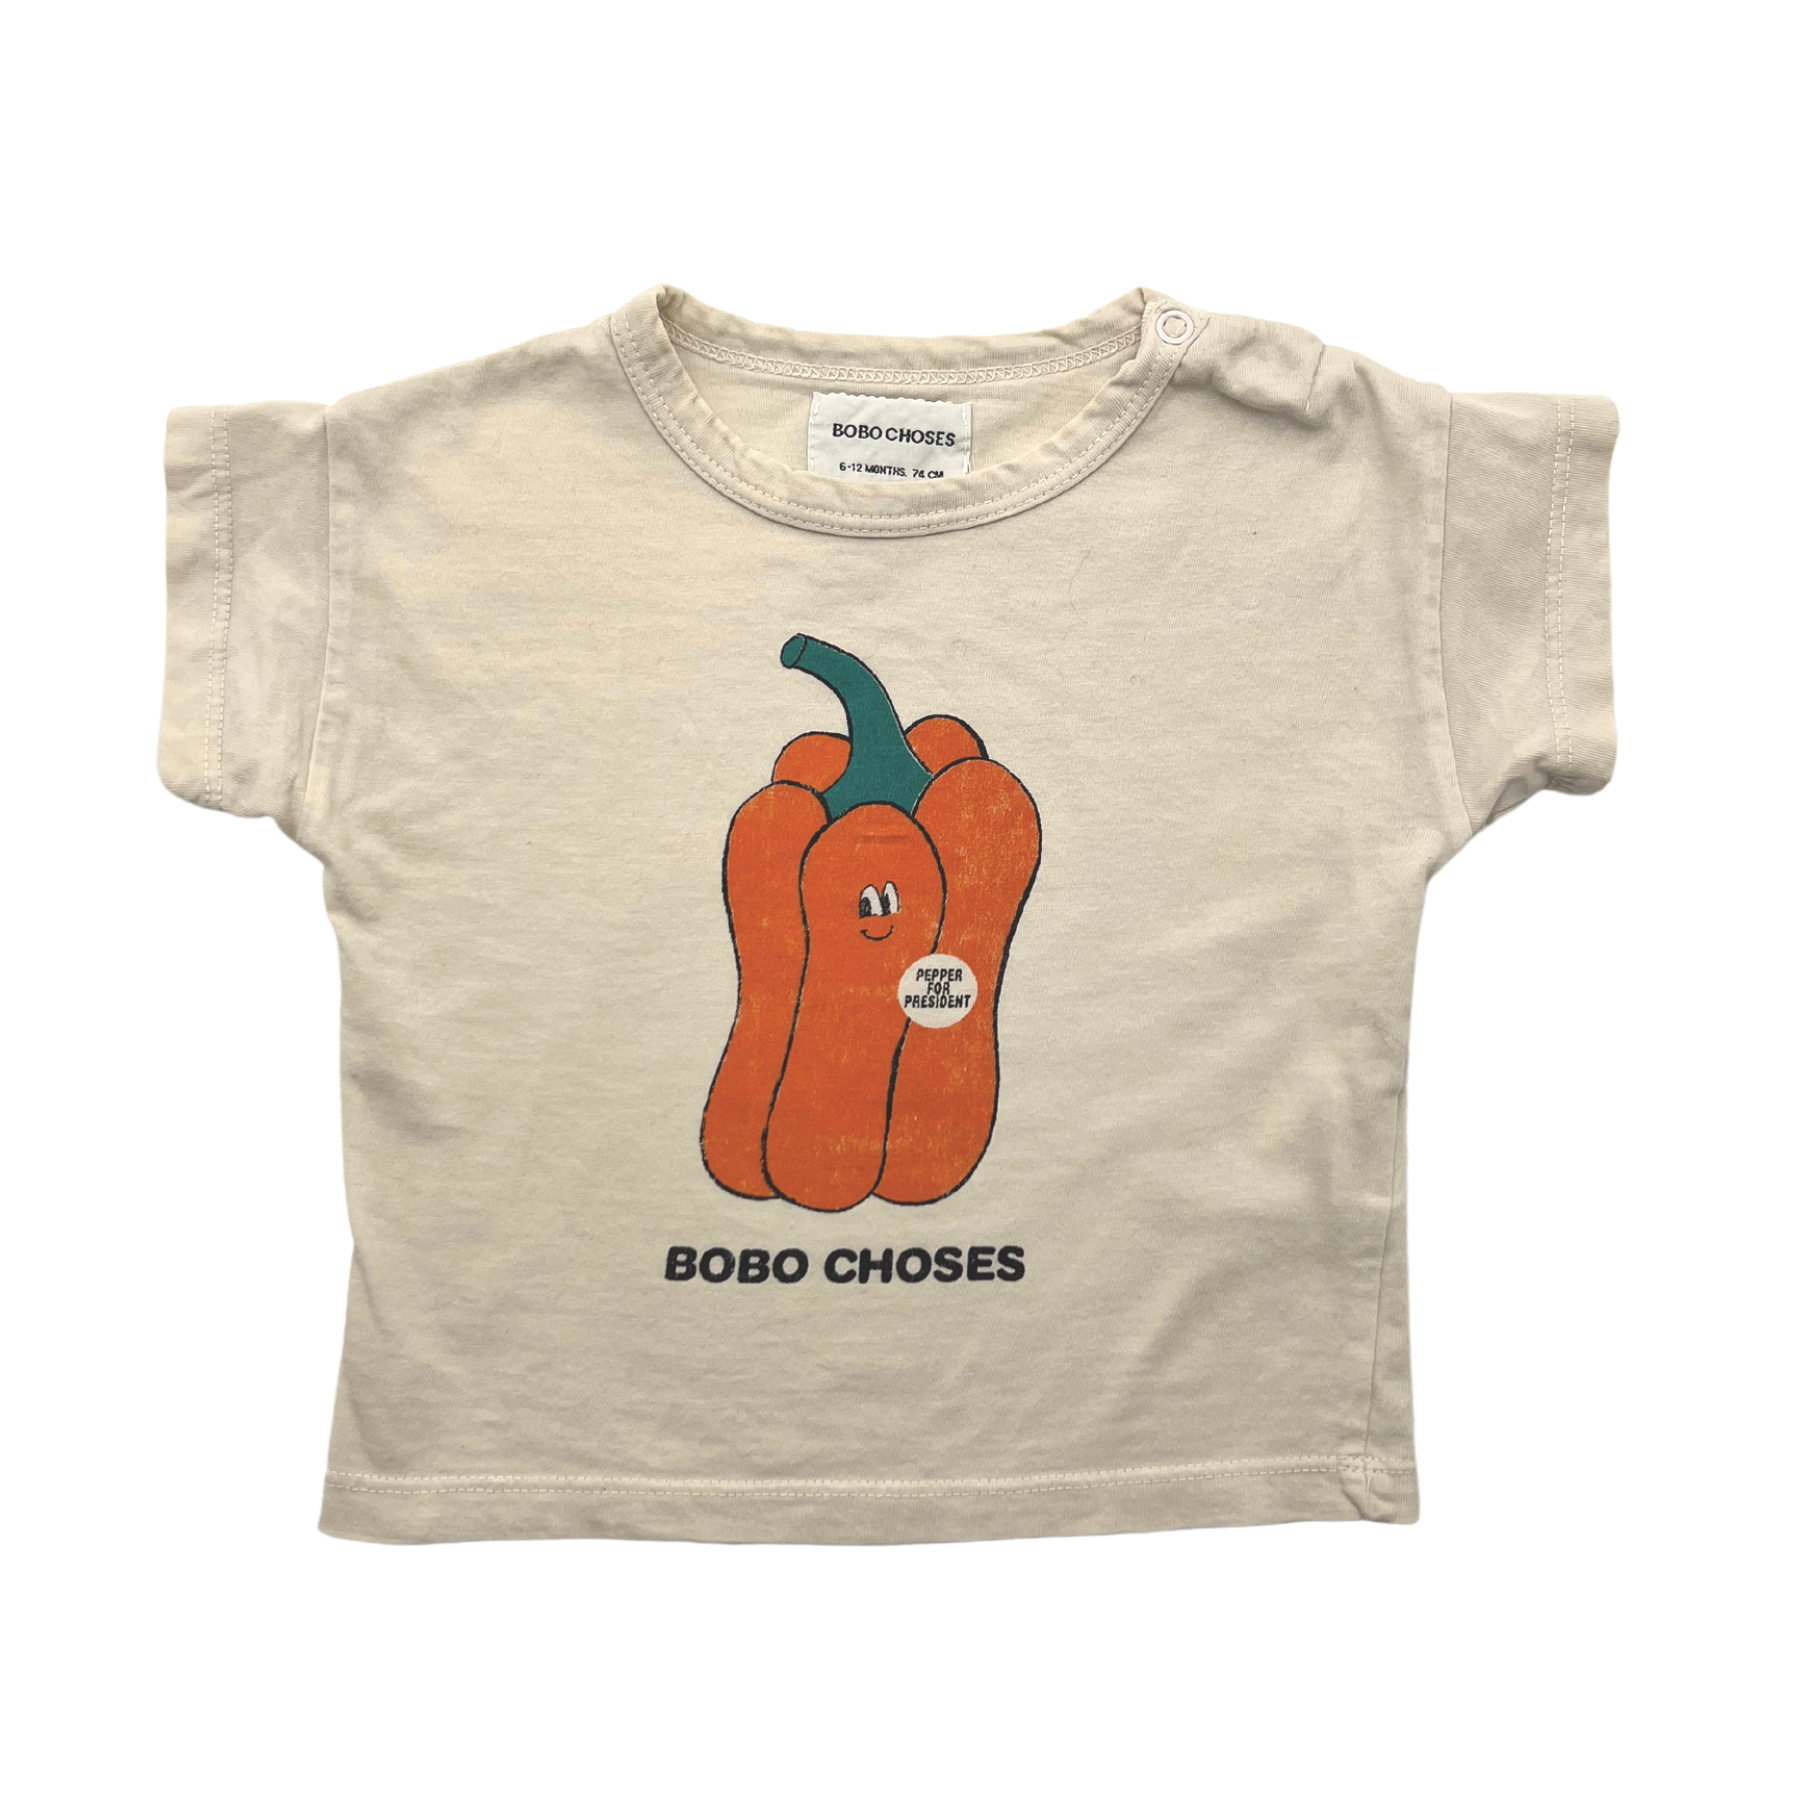 BOBO CHOSES - "pepper for president" t-shirt - 6/12 months